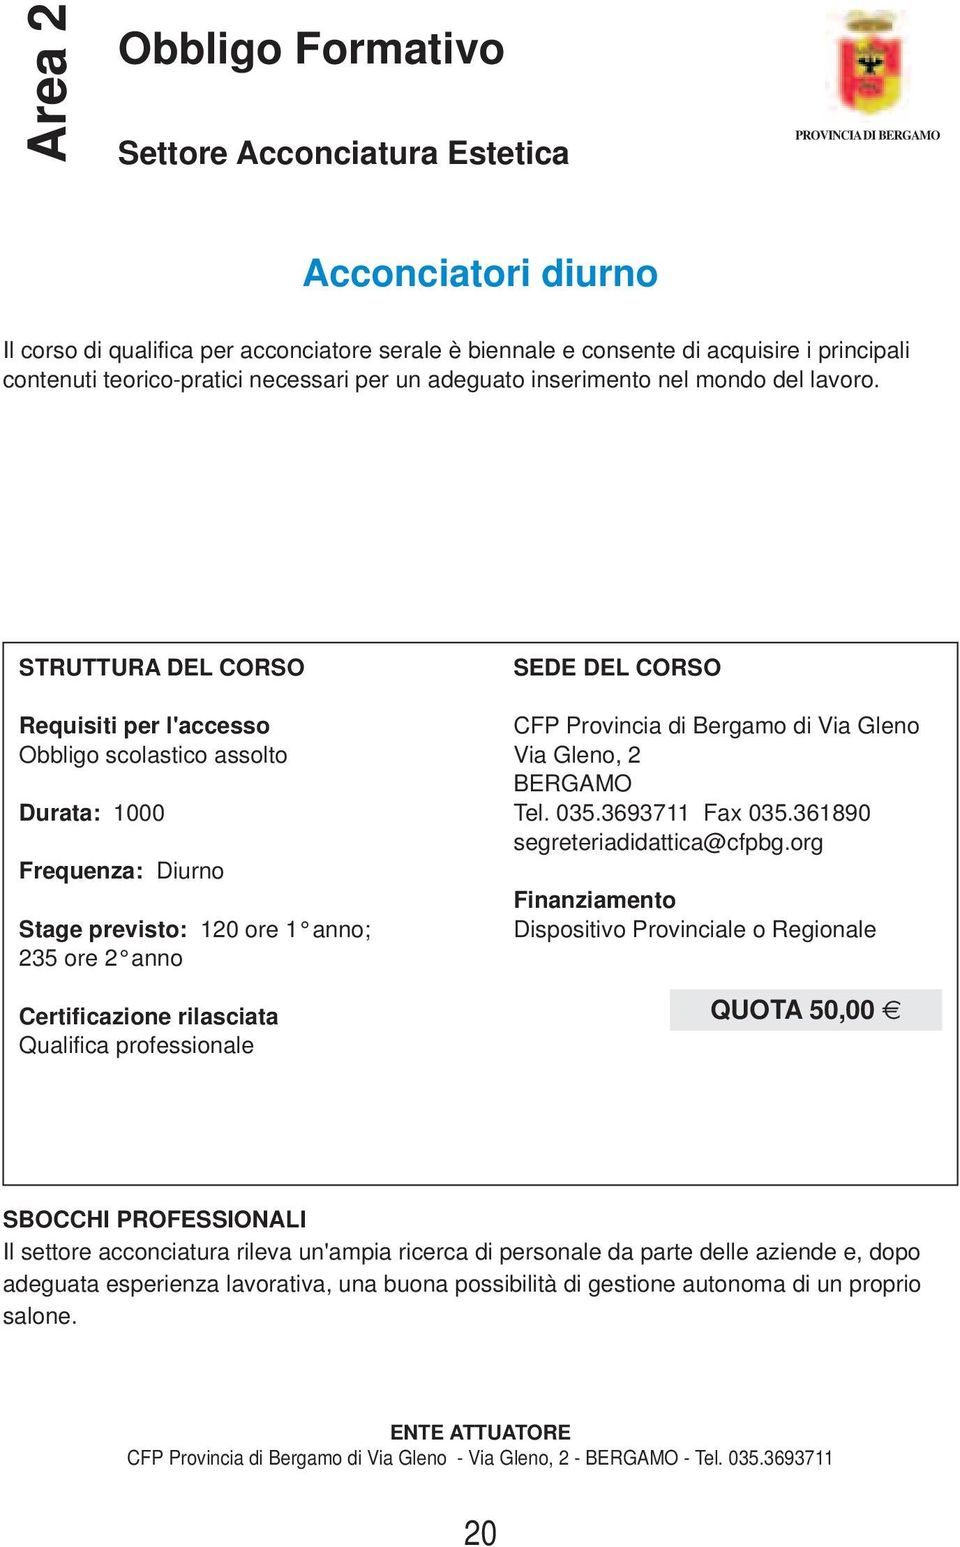 Durata: 1000 Stage previsto: 120 ore 1 anno; 235 ore 2 anno Qualifica professionale CFP Provincia di Bergamo di Via Gleno Via Gleno, 2 BERGAMO Tel. 035.3693711 Fax 035.